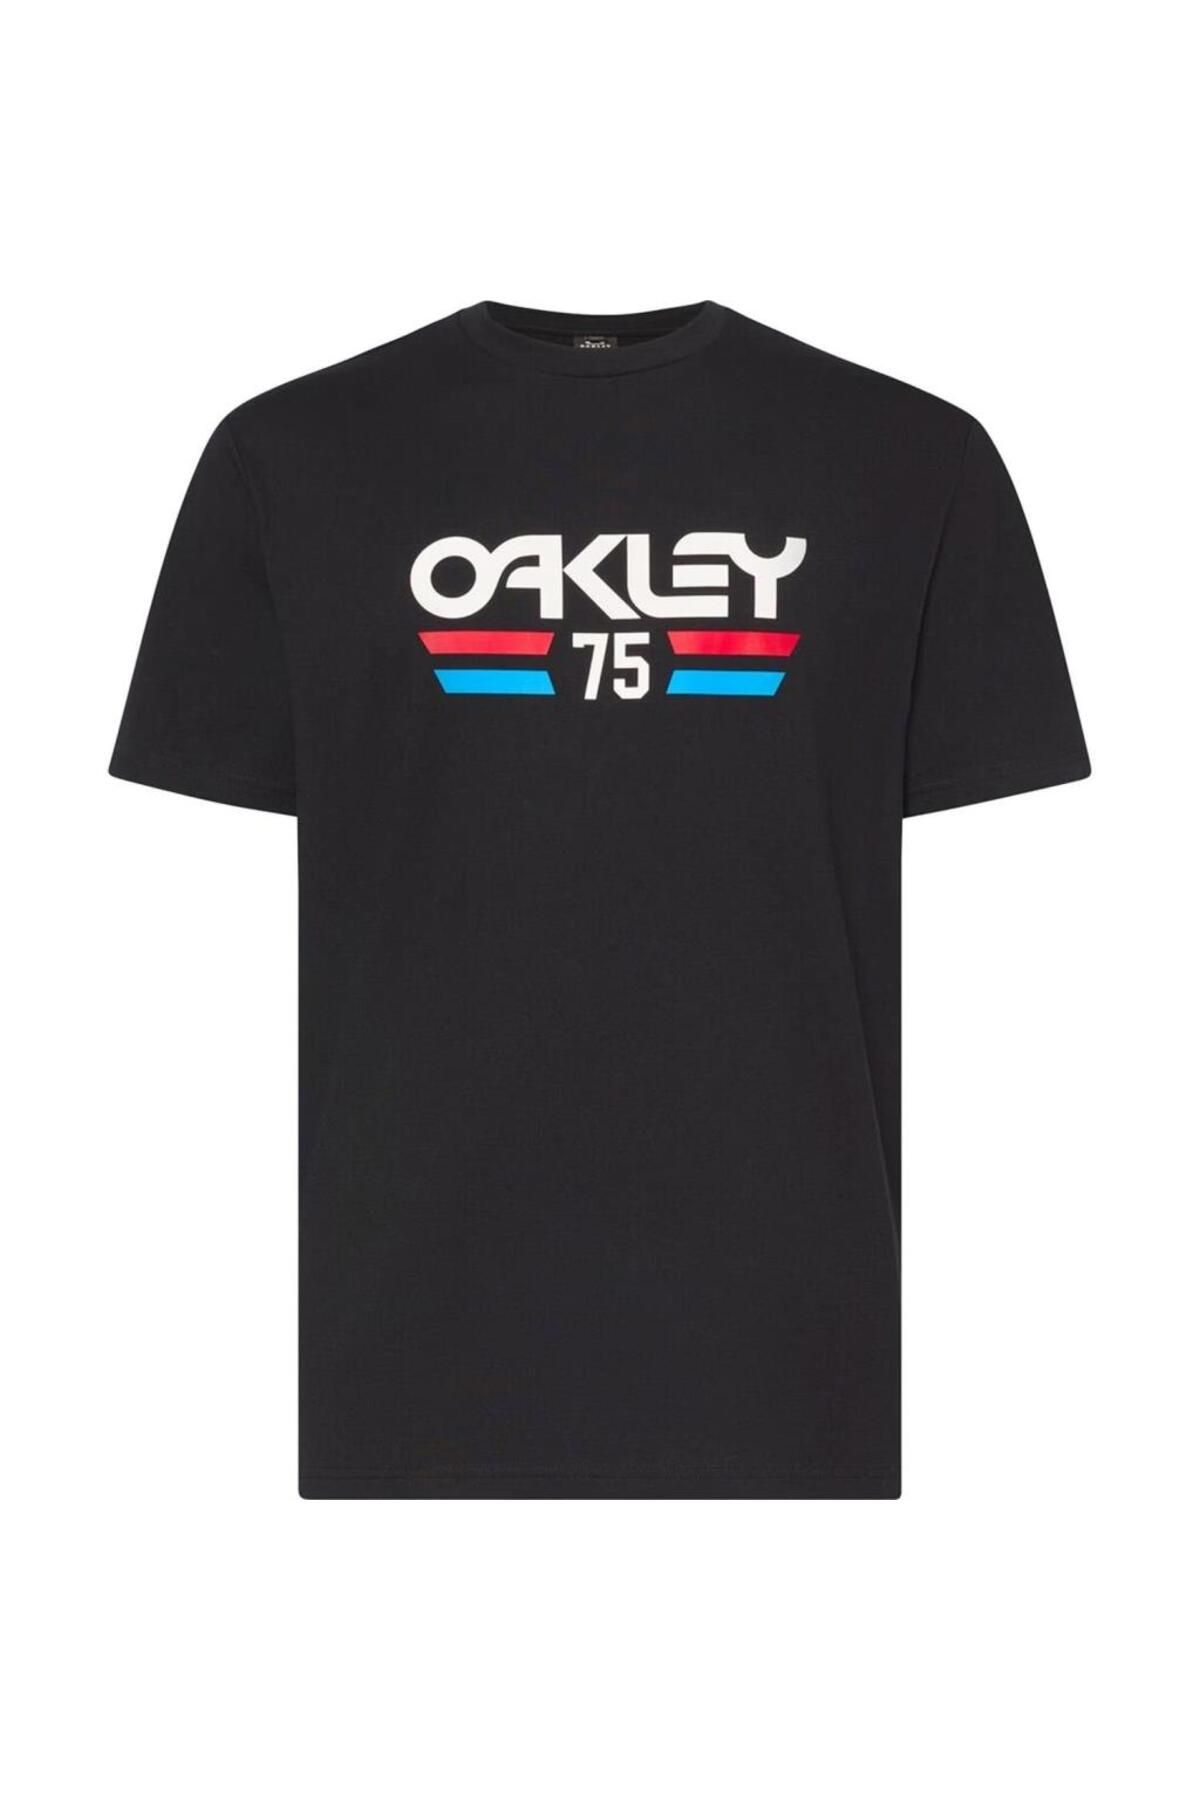 Oakley Vista 1975 Tee Erkek T-Shirt